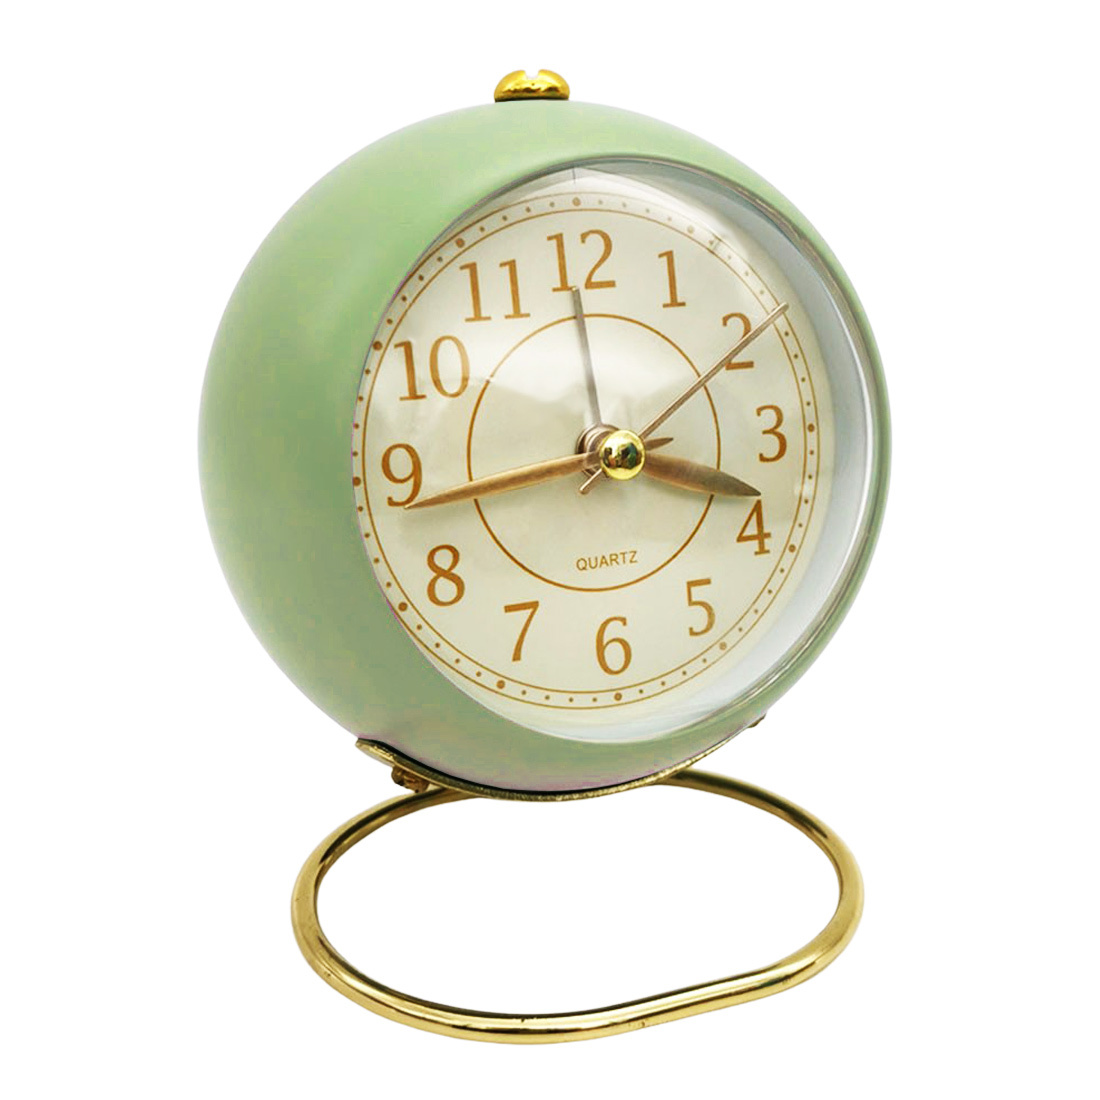 目覚まし時計 緑 アラーム時計 連続秒針 ライト おしゃれ かわいい Green